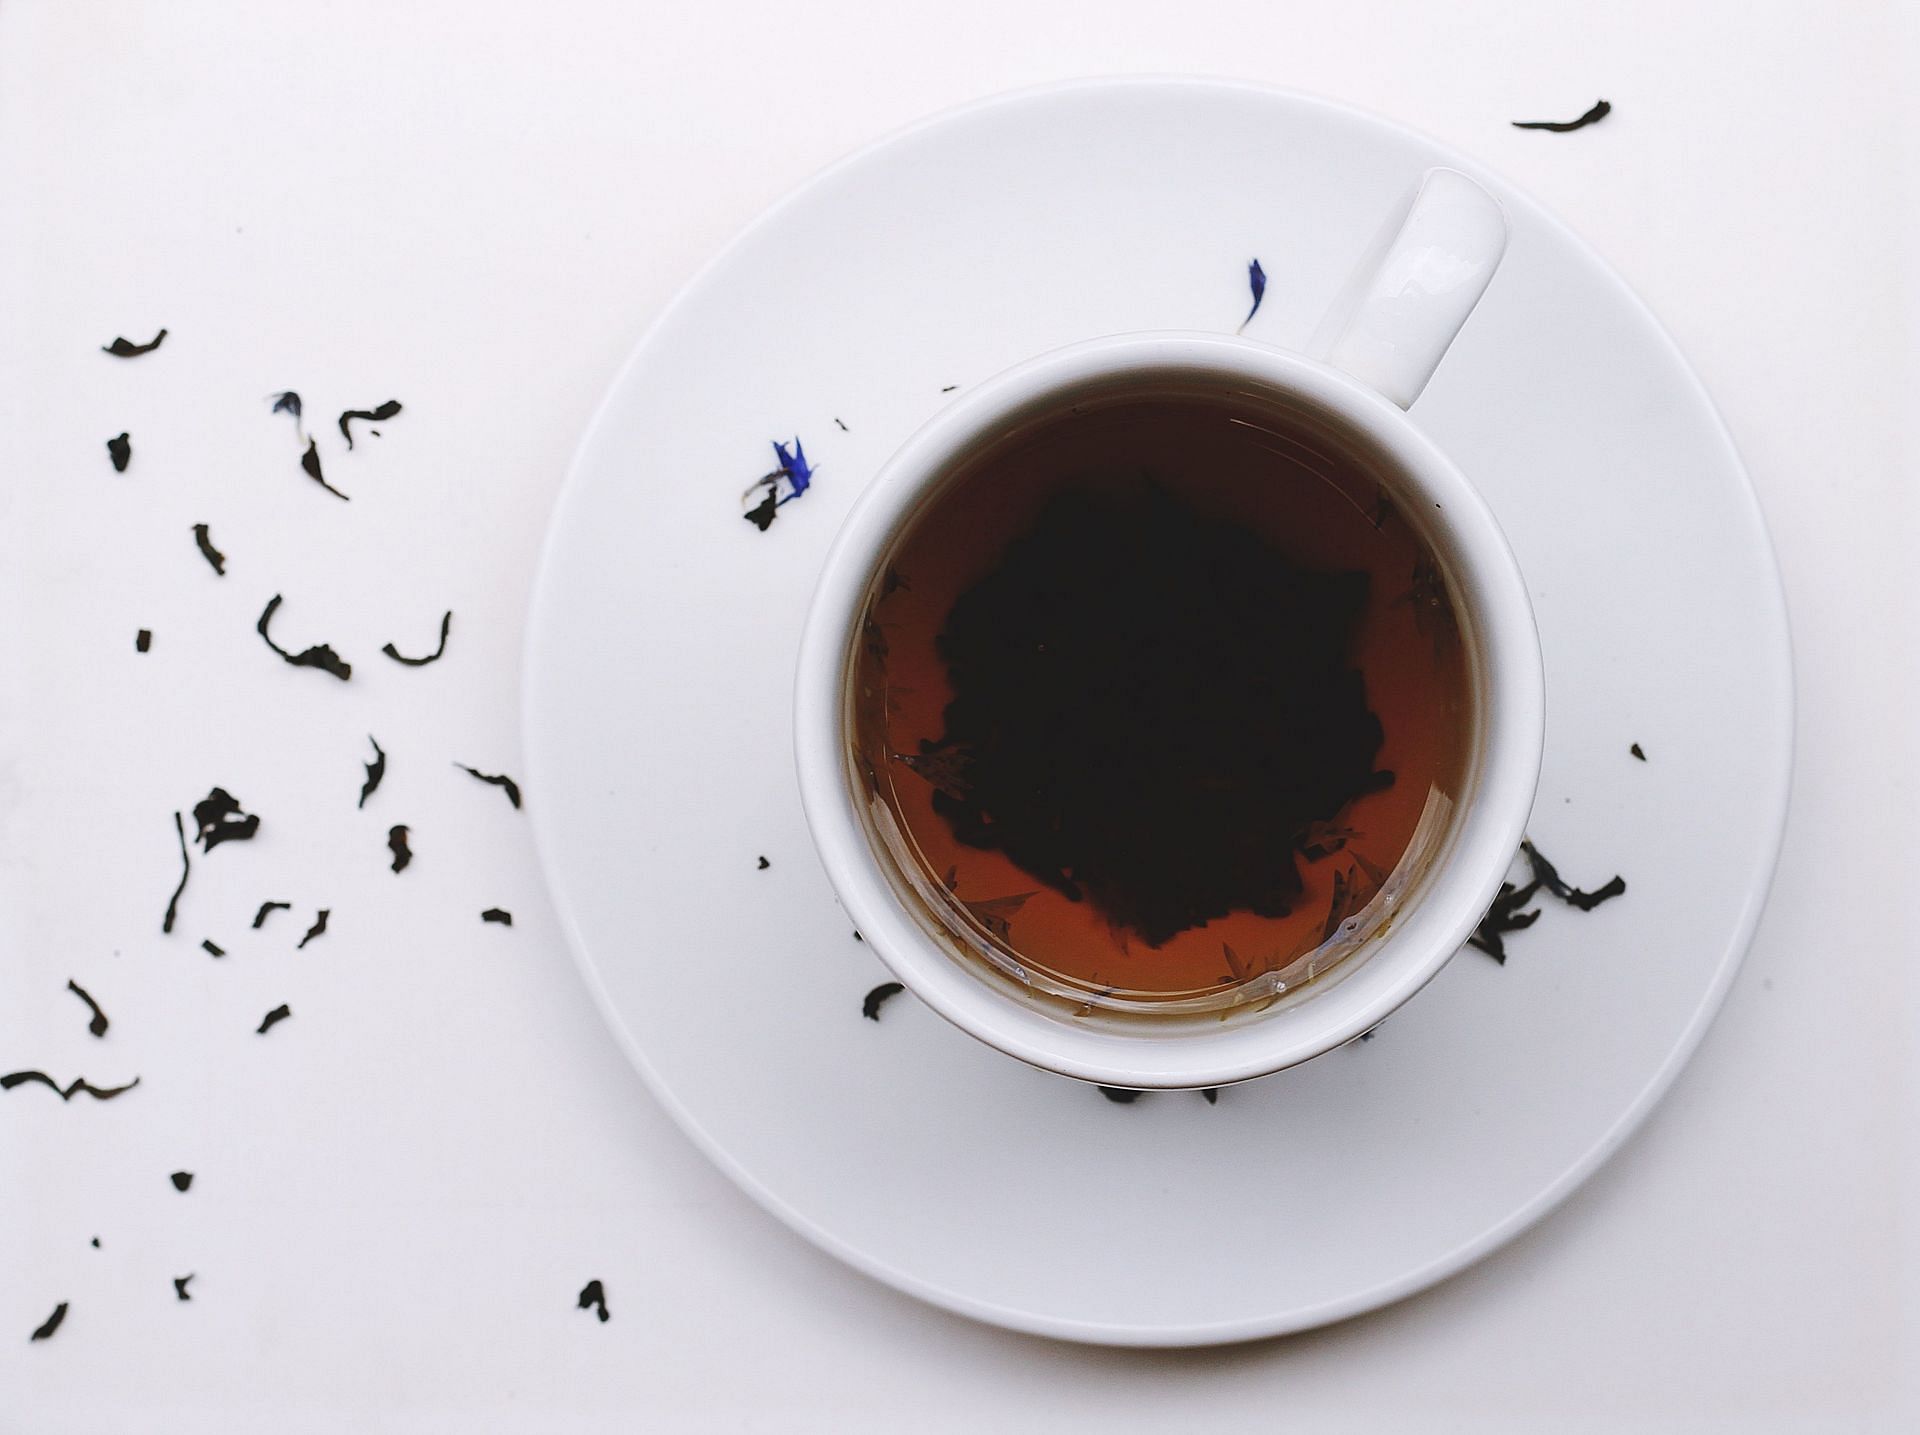 Black tea. (Image via Unsplash / Toa Heftiba)